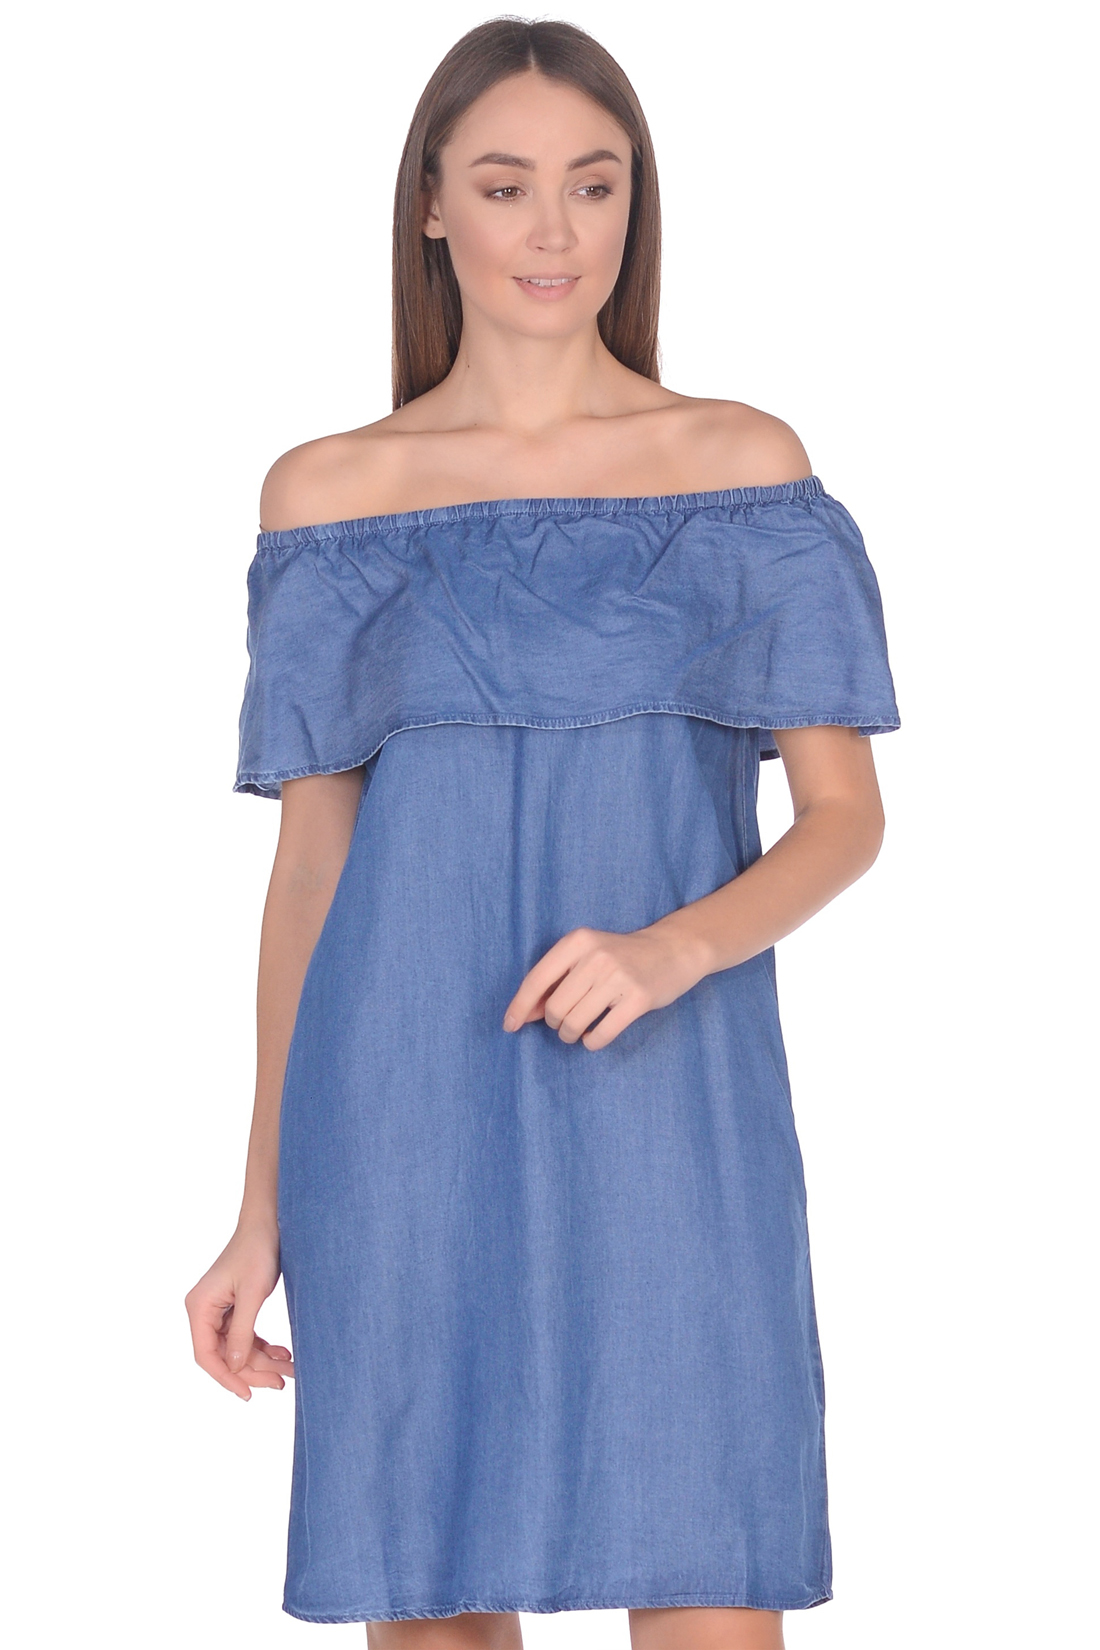 Платье с воланом из денима-шамбри (арт. baon B459102), размер M, цвет blue denim#голубой Платье с воланом из денима-шамбри (арт. baon B459102) - фото 3